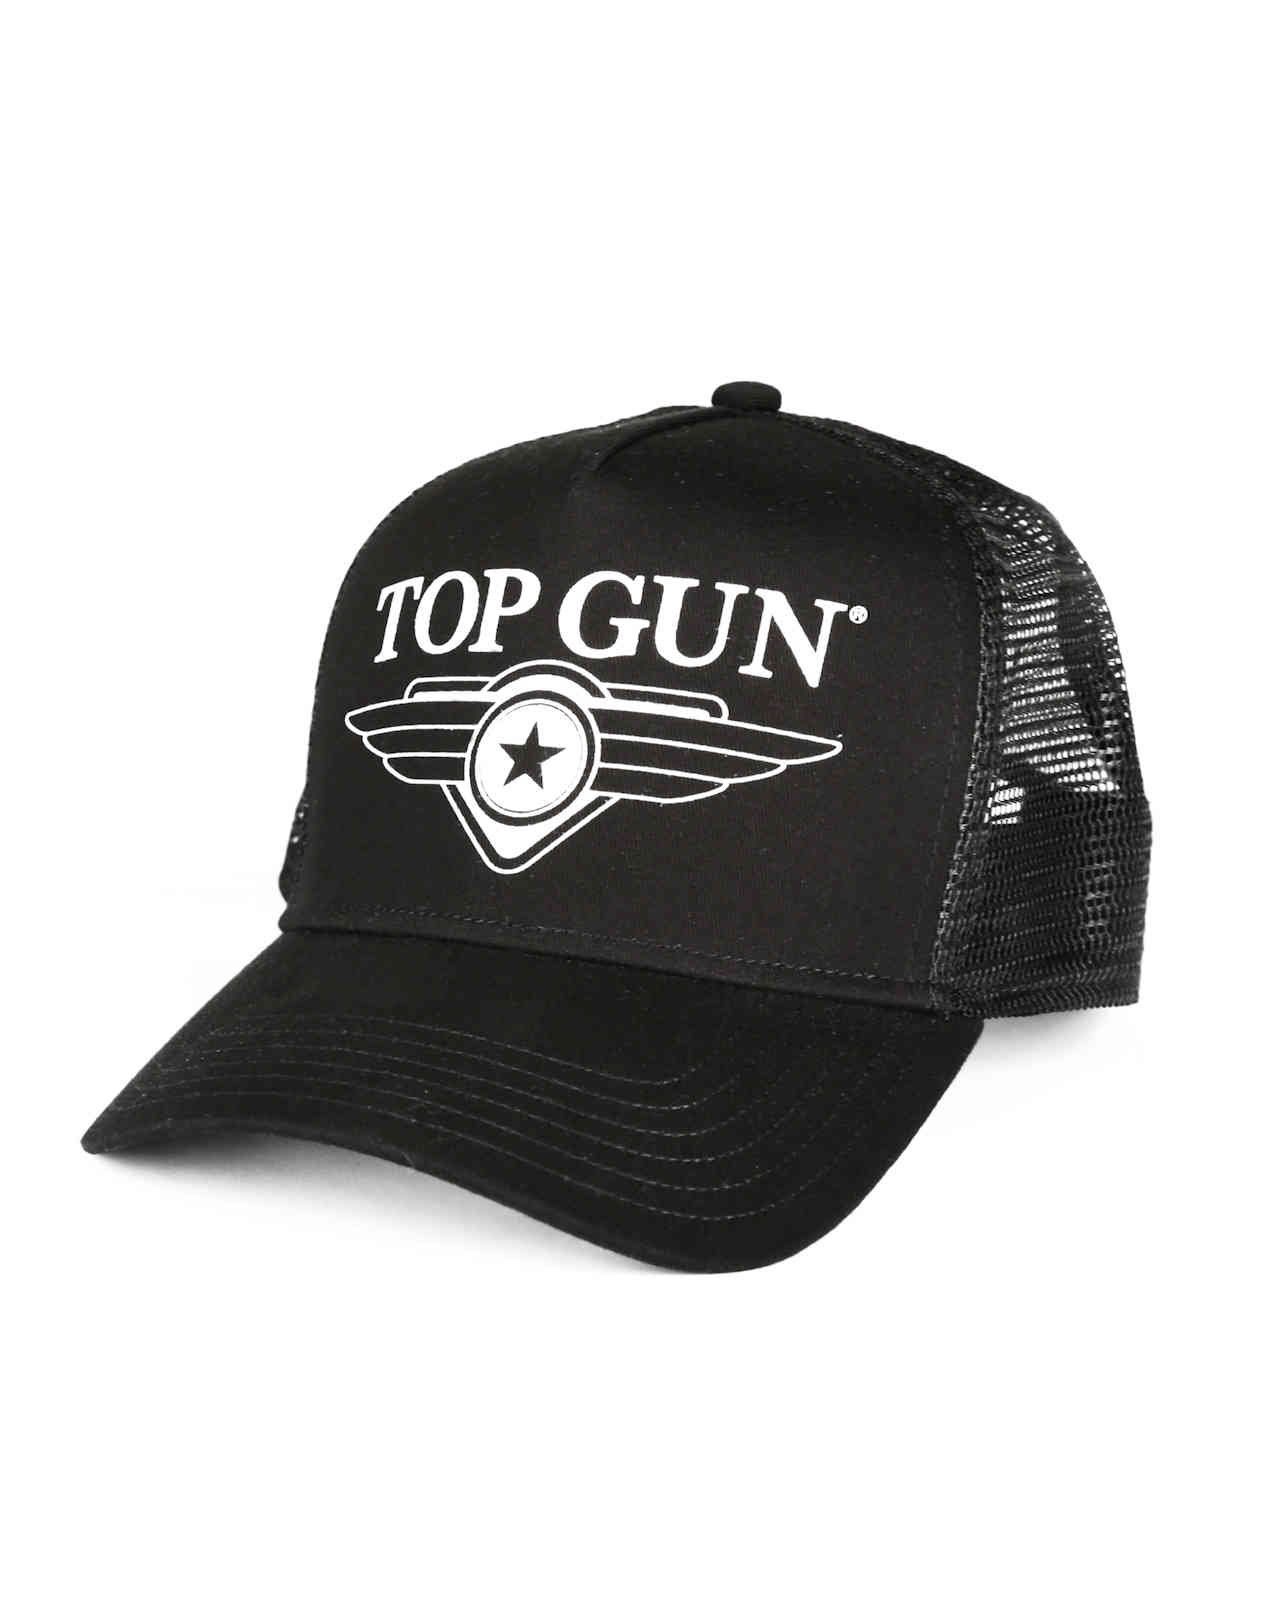 TOP GUN Flex Cap, black